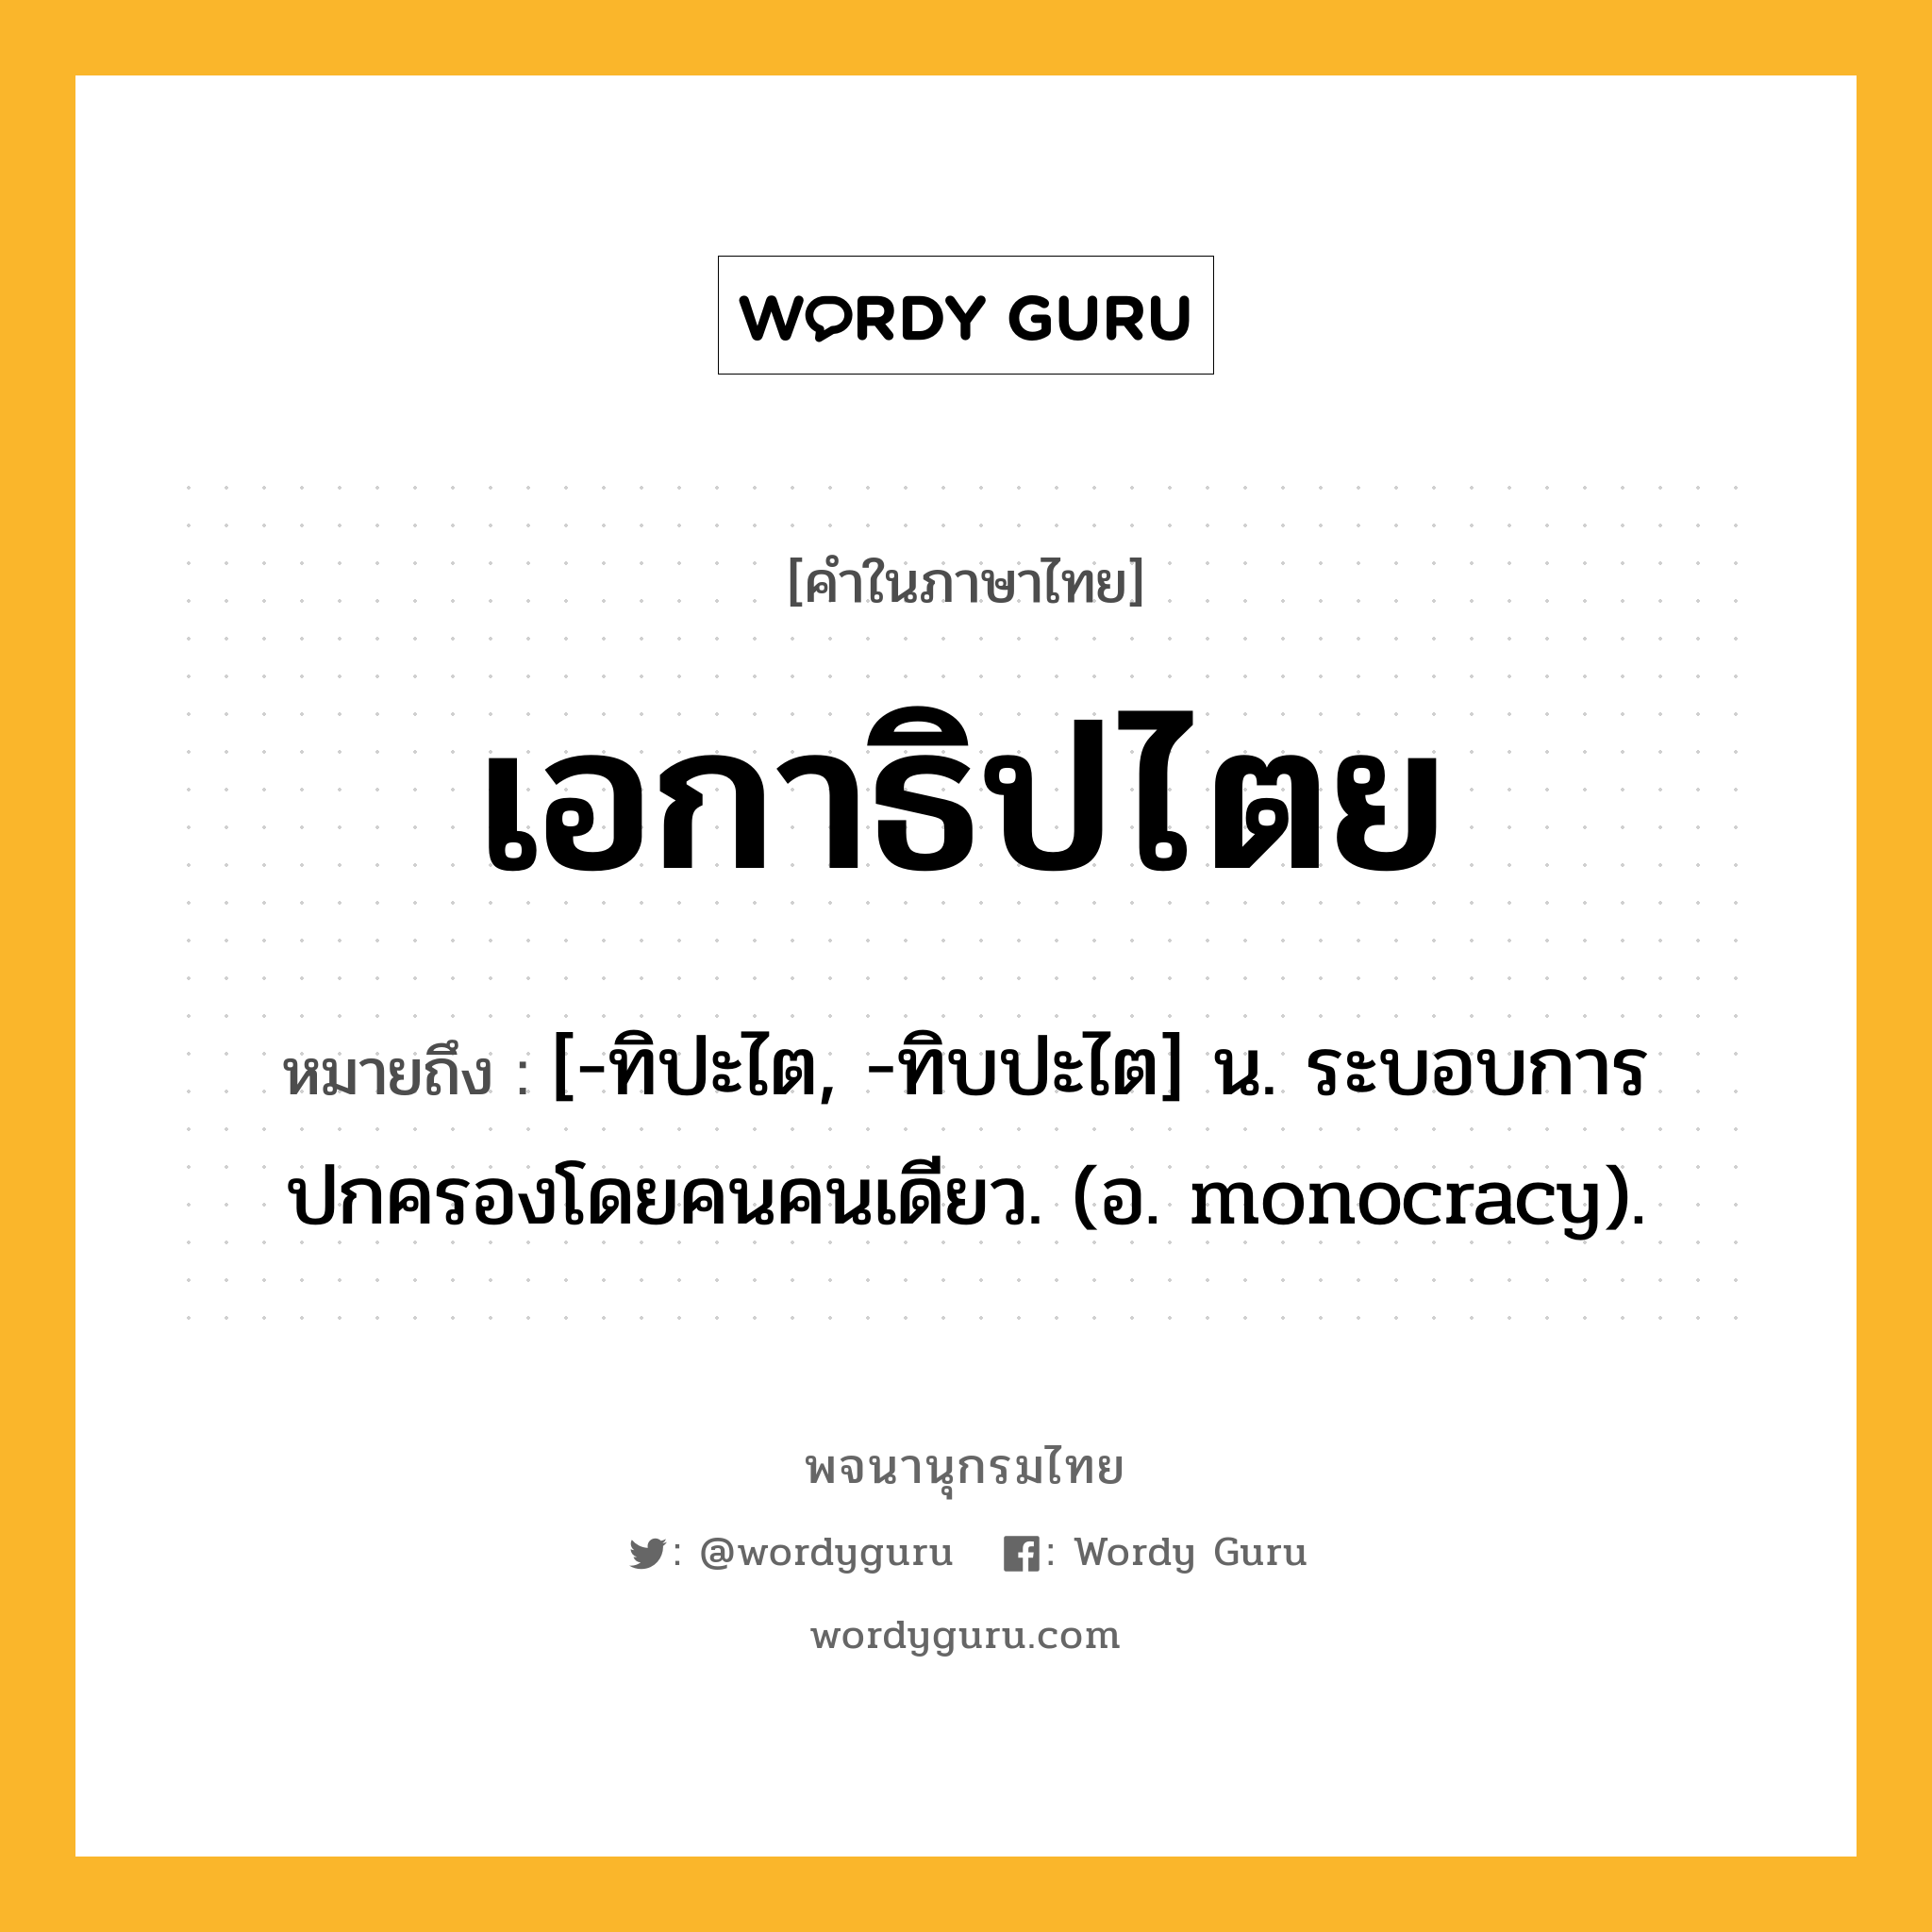 เอกาธิปไตย หมายถึงอะไร?, คำในภาษาไทย เอกาธิปไตย หมายถึง [-ทิปะไต, -ทิบปะไต] น. ระบอบการปกครองโดยคนคนเดียว. (อ. monocracy).